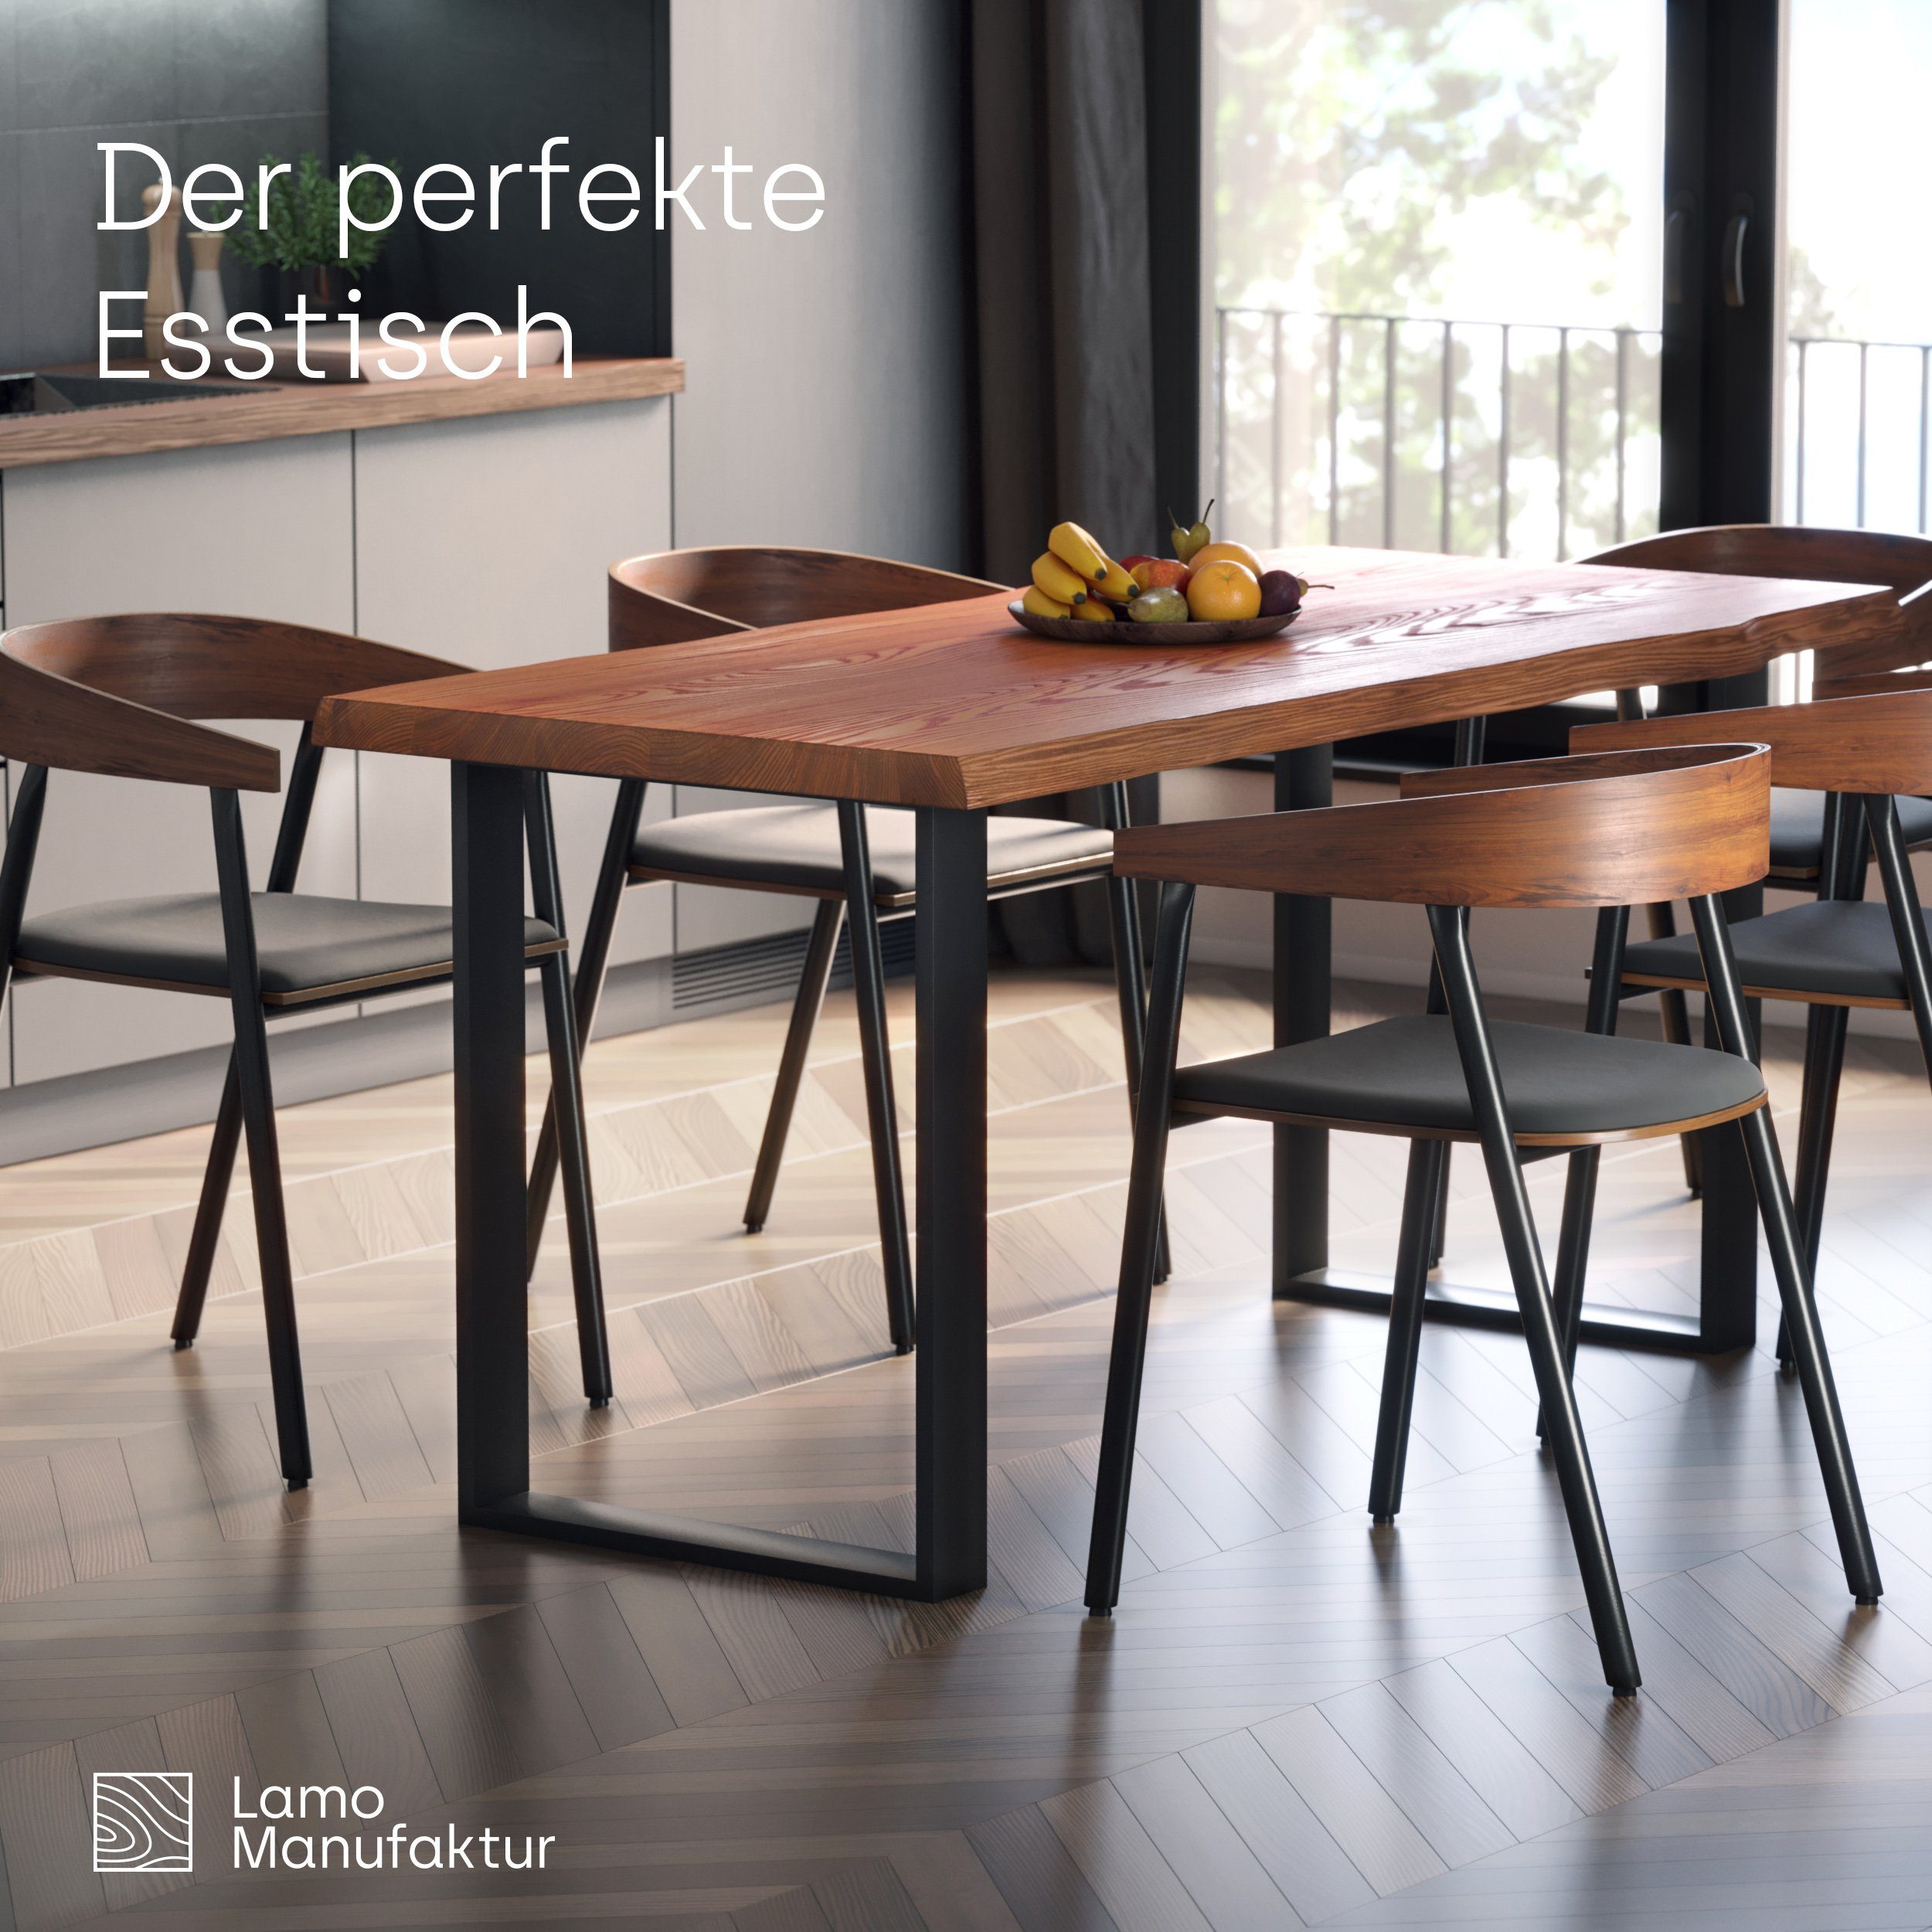 Esstisch Rustikal LAMO (1 Klarlack Baumkantentisch Tisch), massiv Loft Manufaktur mit Baumkante | Rohstahl Massivholz Metallgestell inkl.